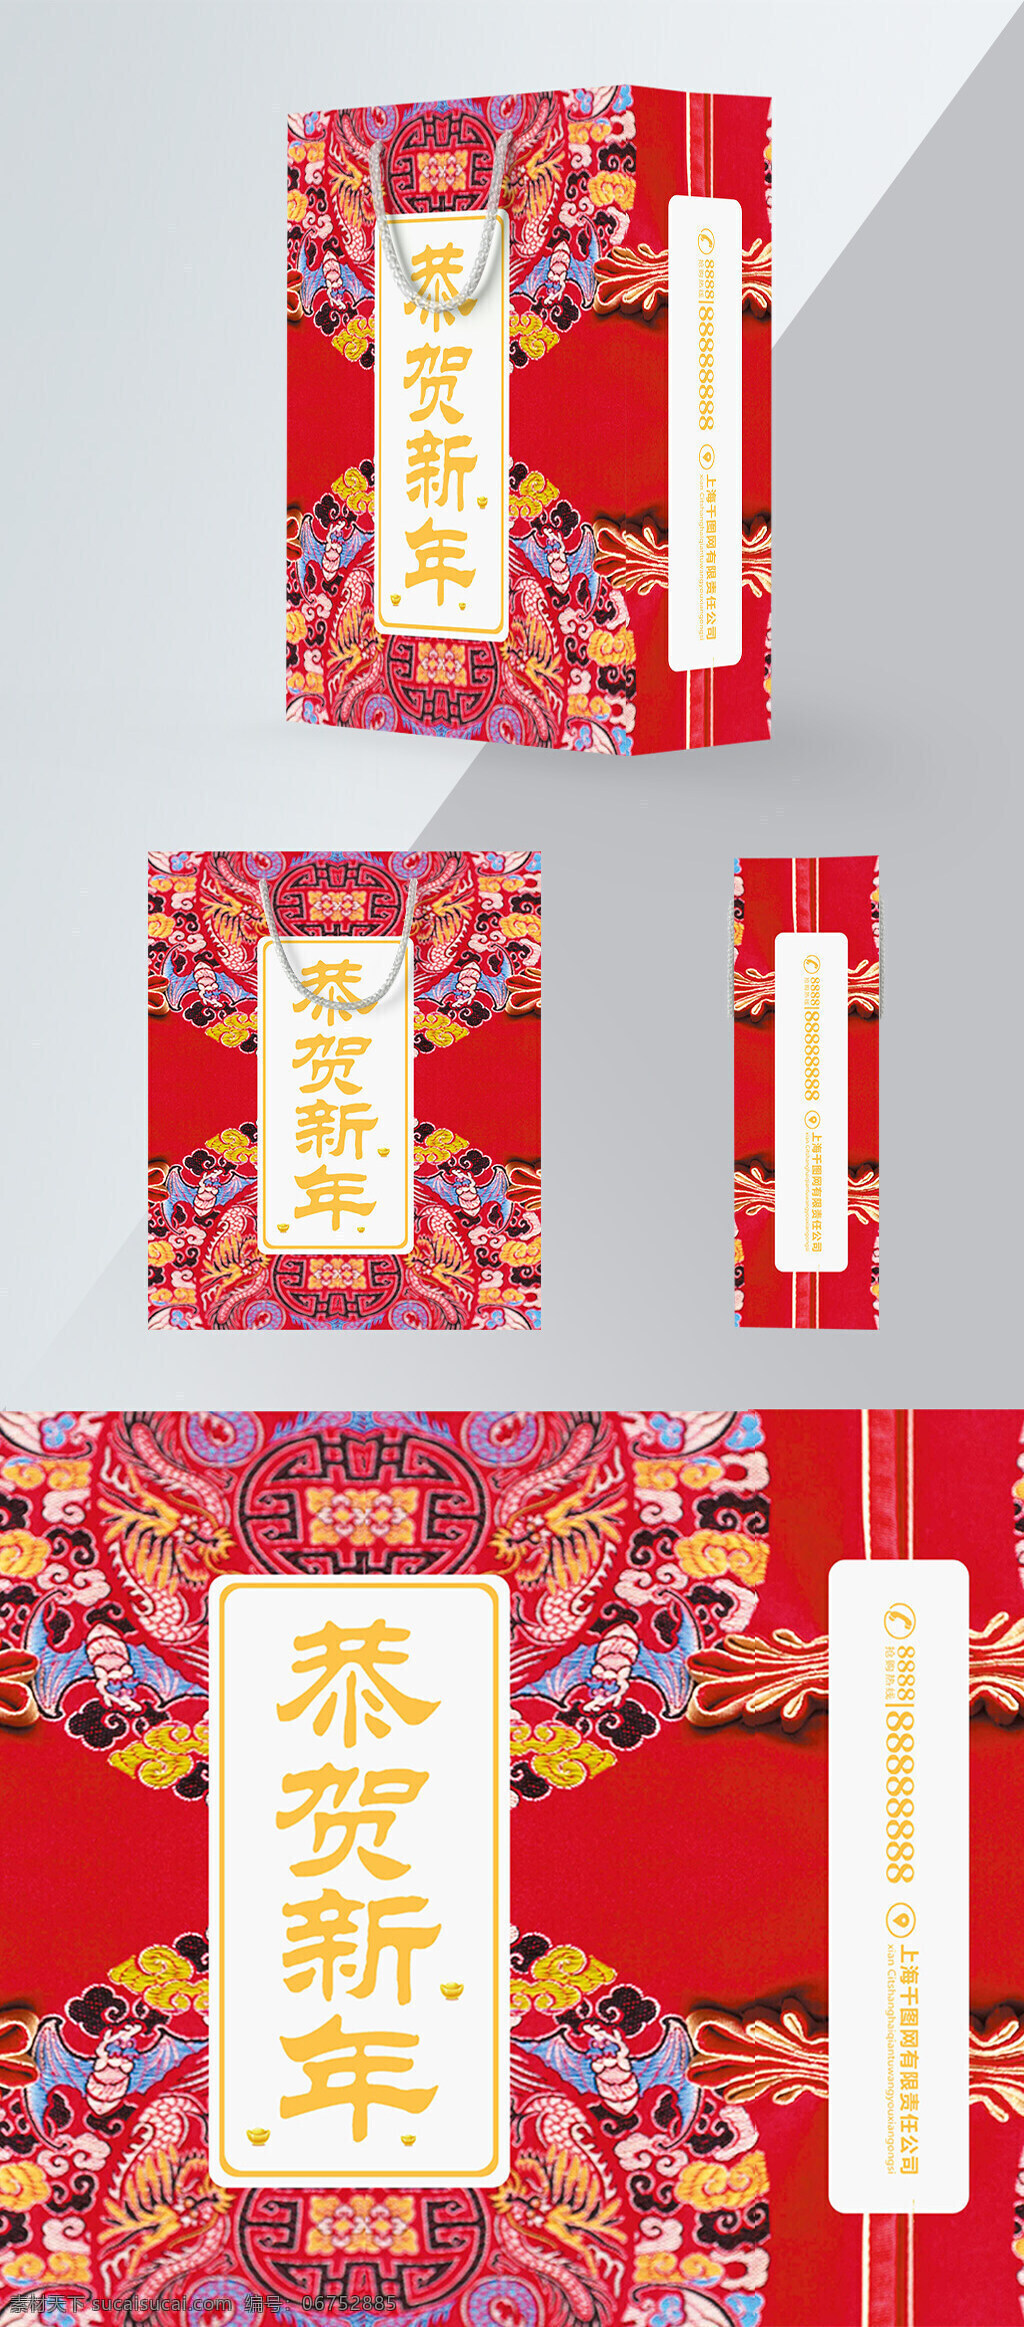 精品 手提袋 红色 中 国风 新年 礼品 包装设计 包装 简约 绣花 中国风